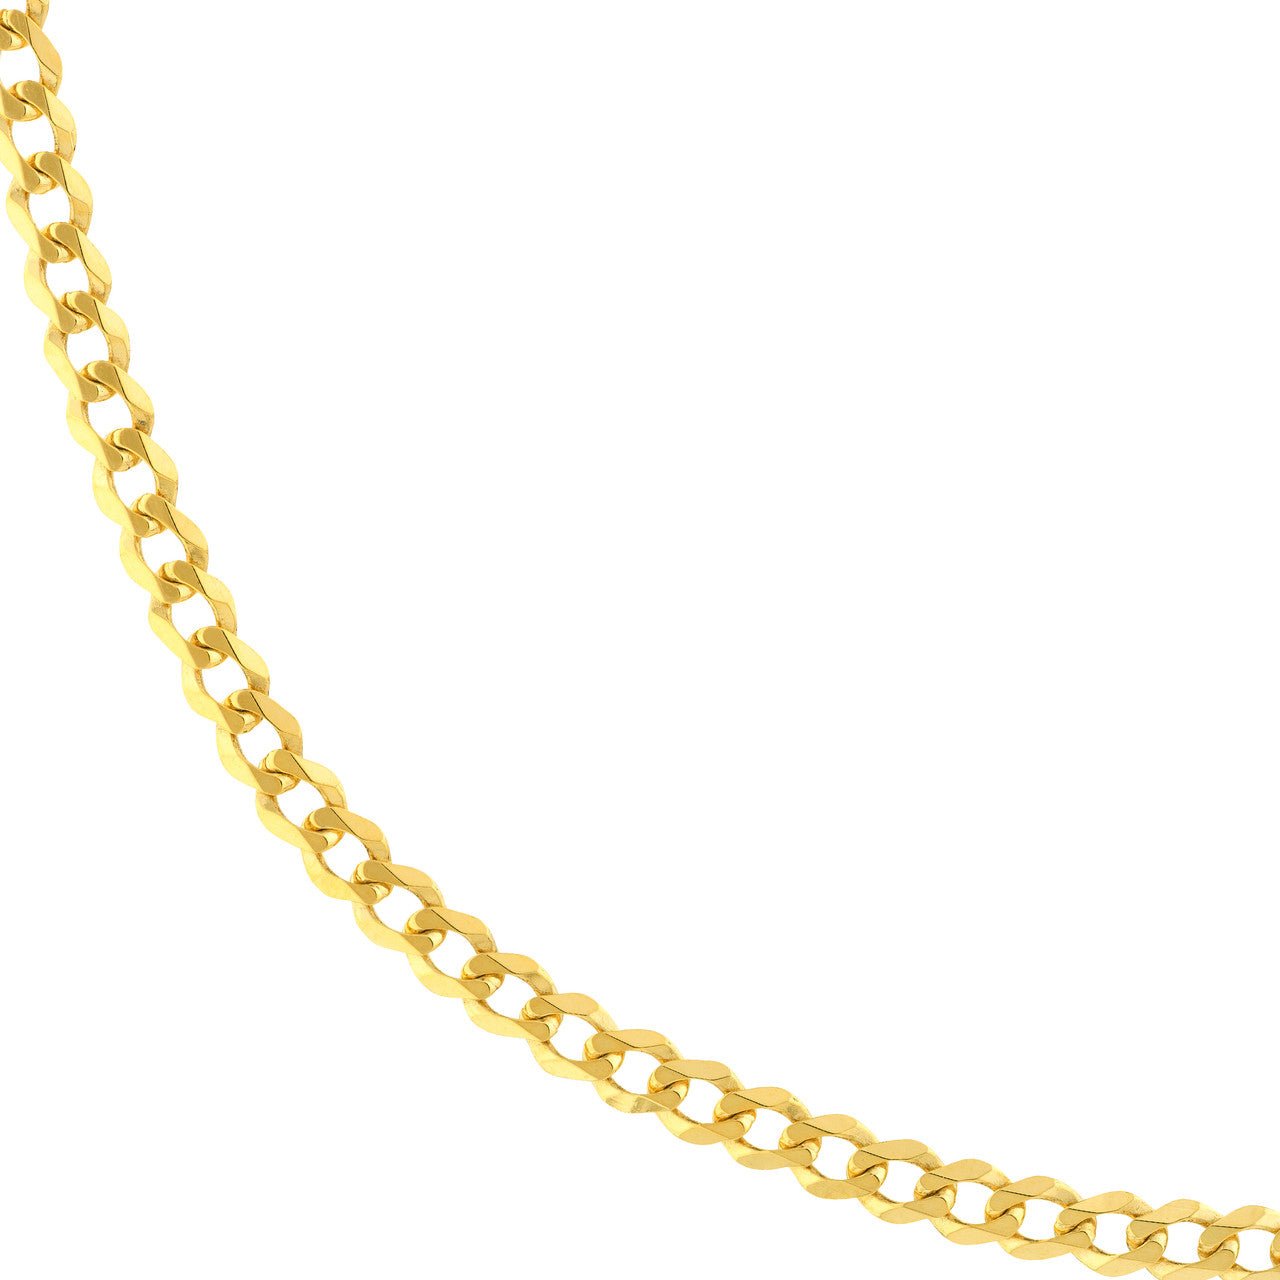 Gold Chains 20 Inches - Diamond Origin